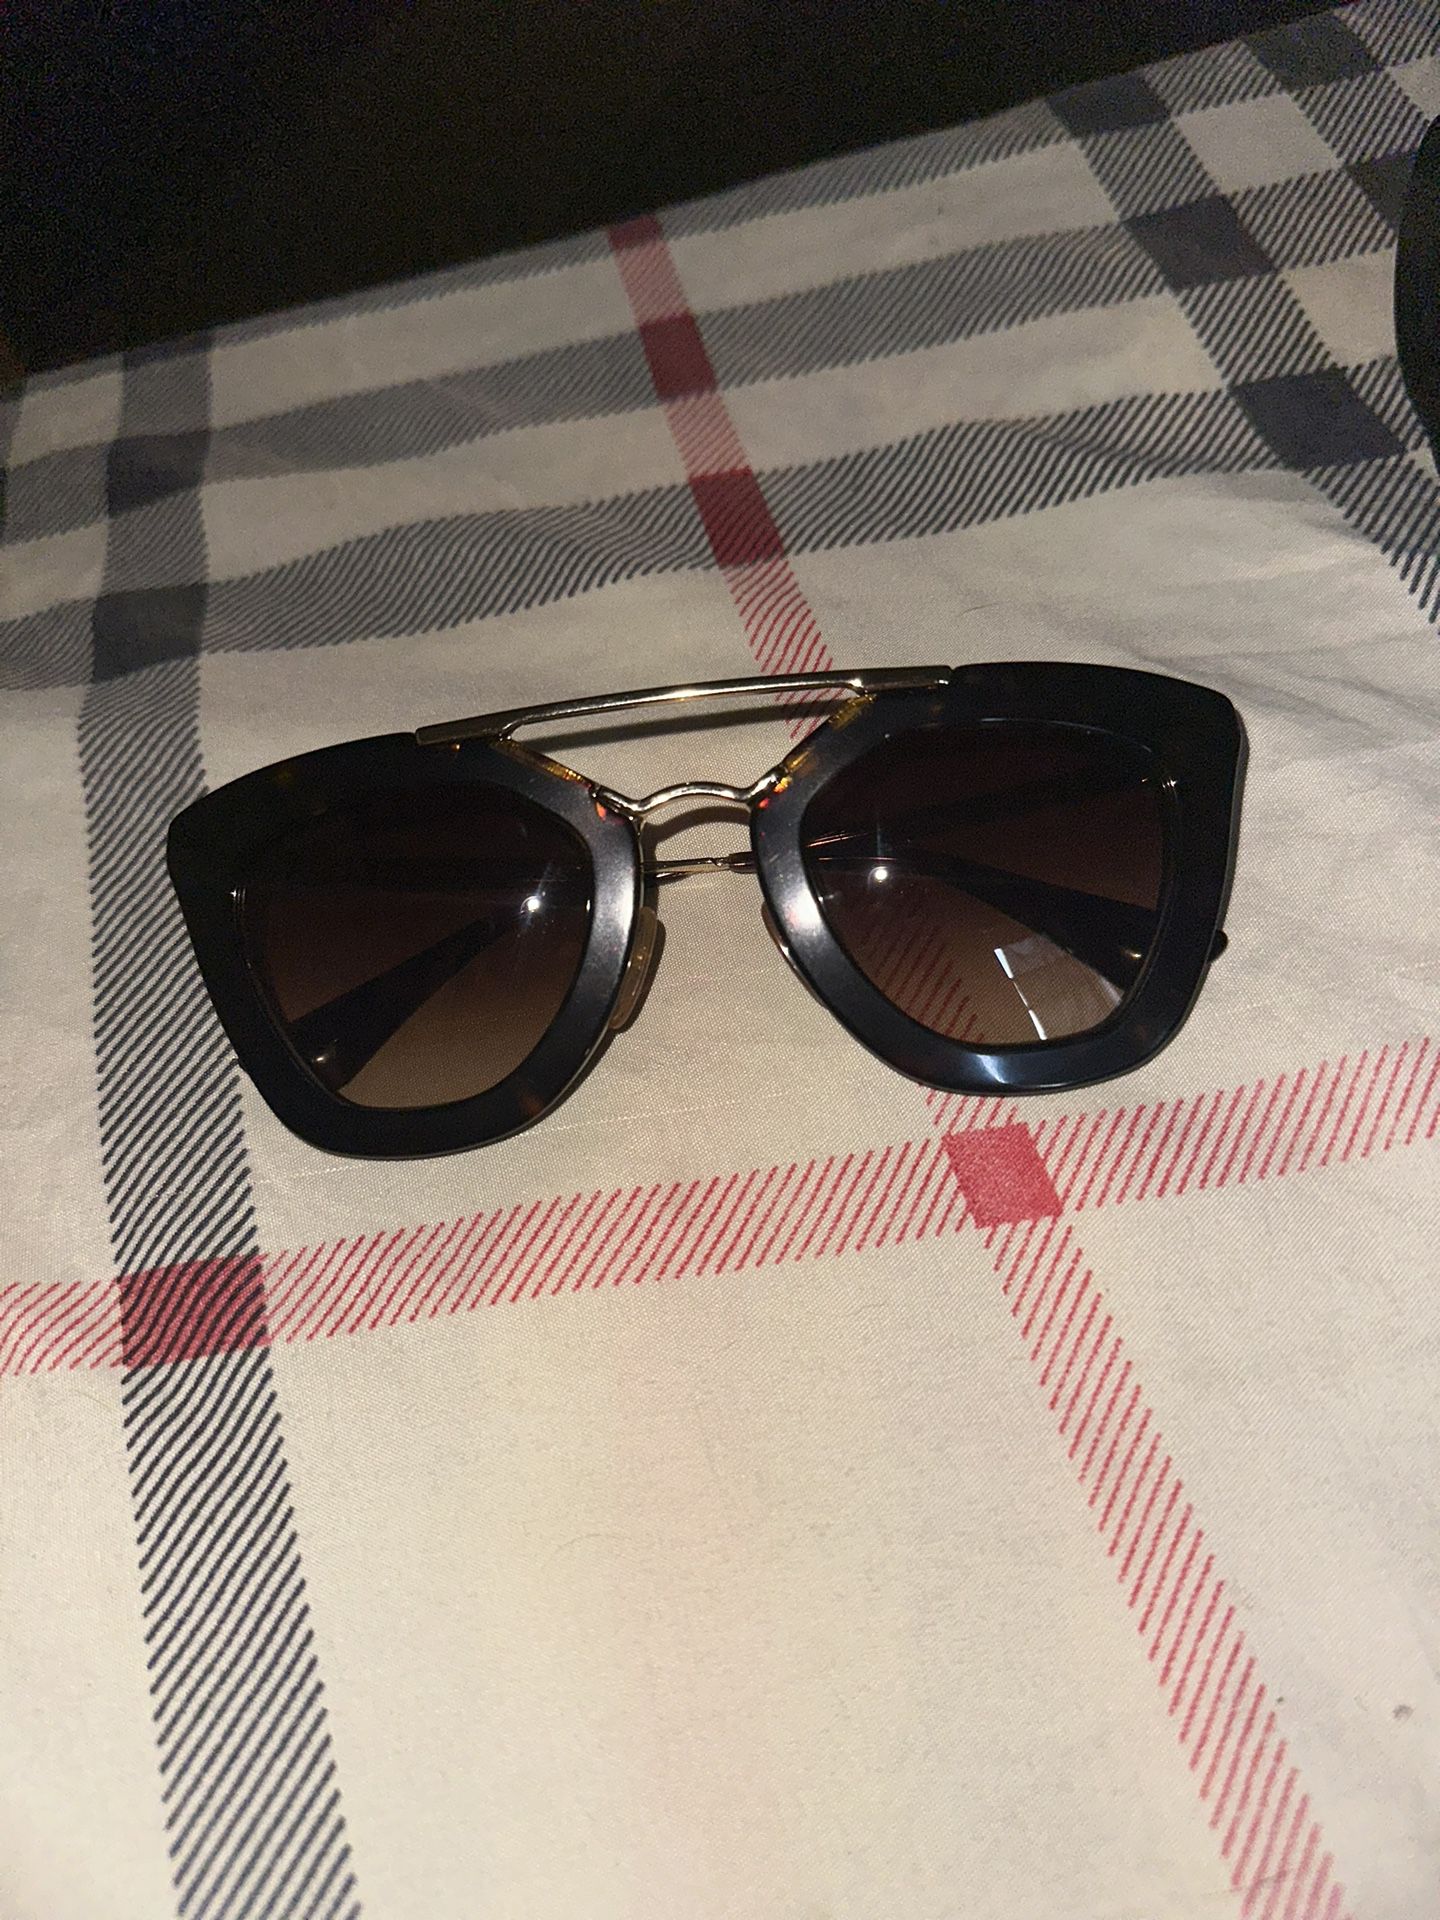 Authentic Prada Sunglasses